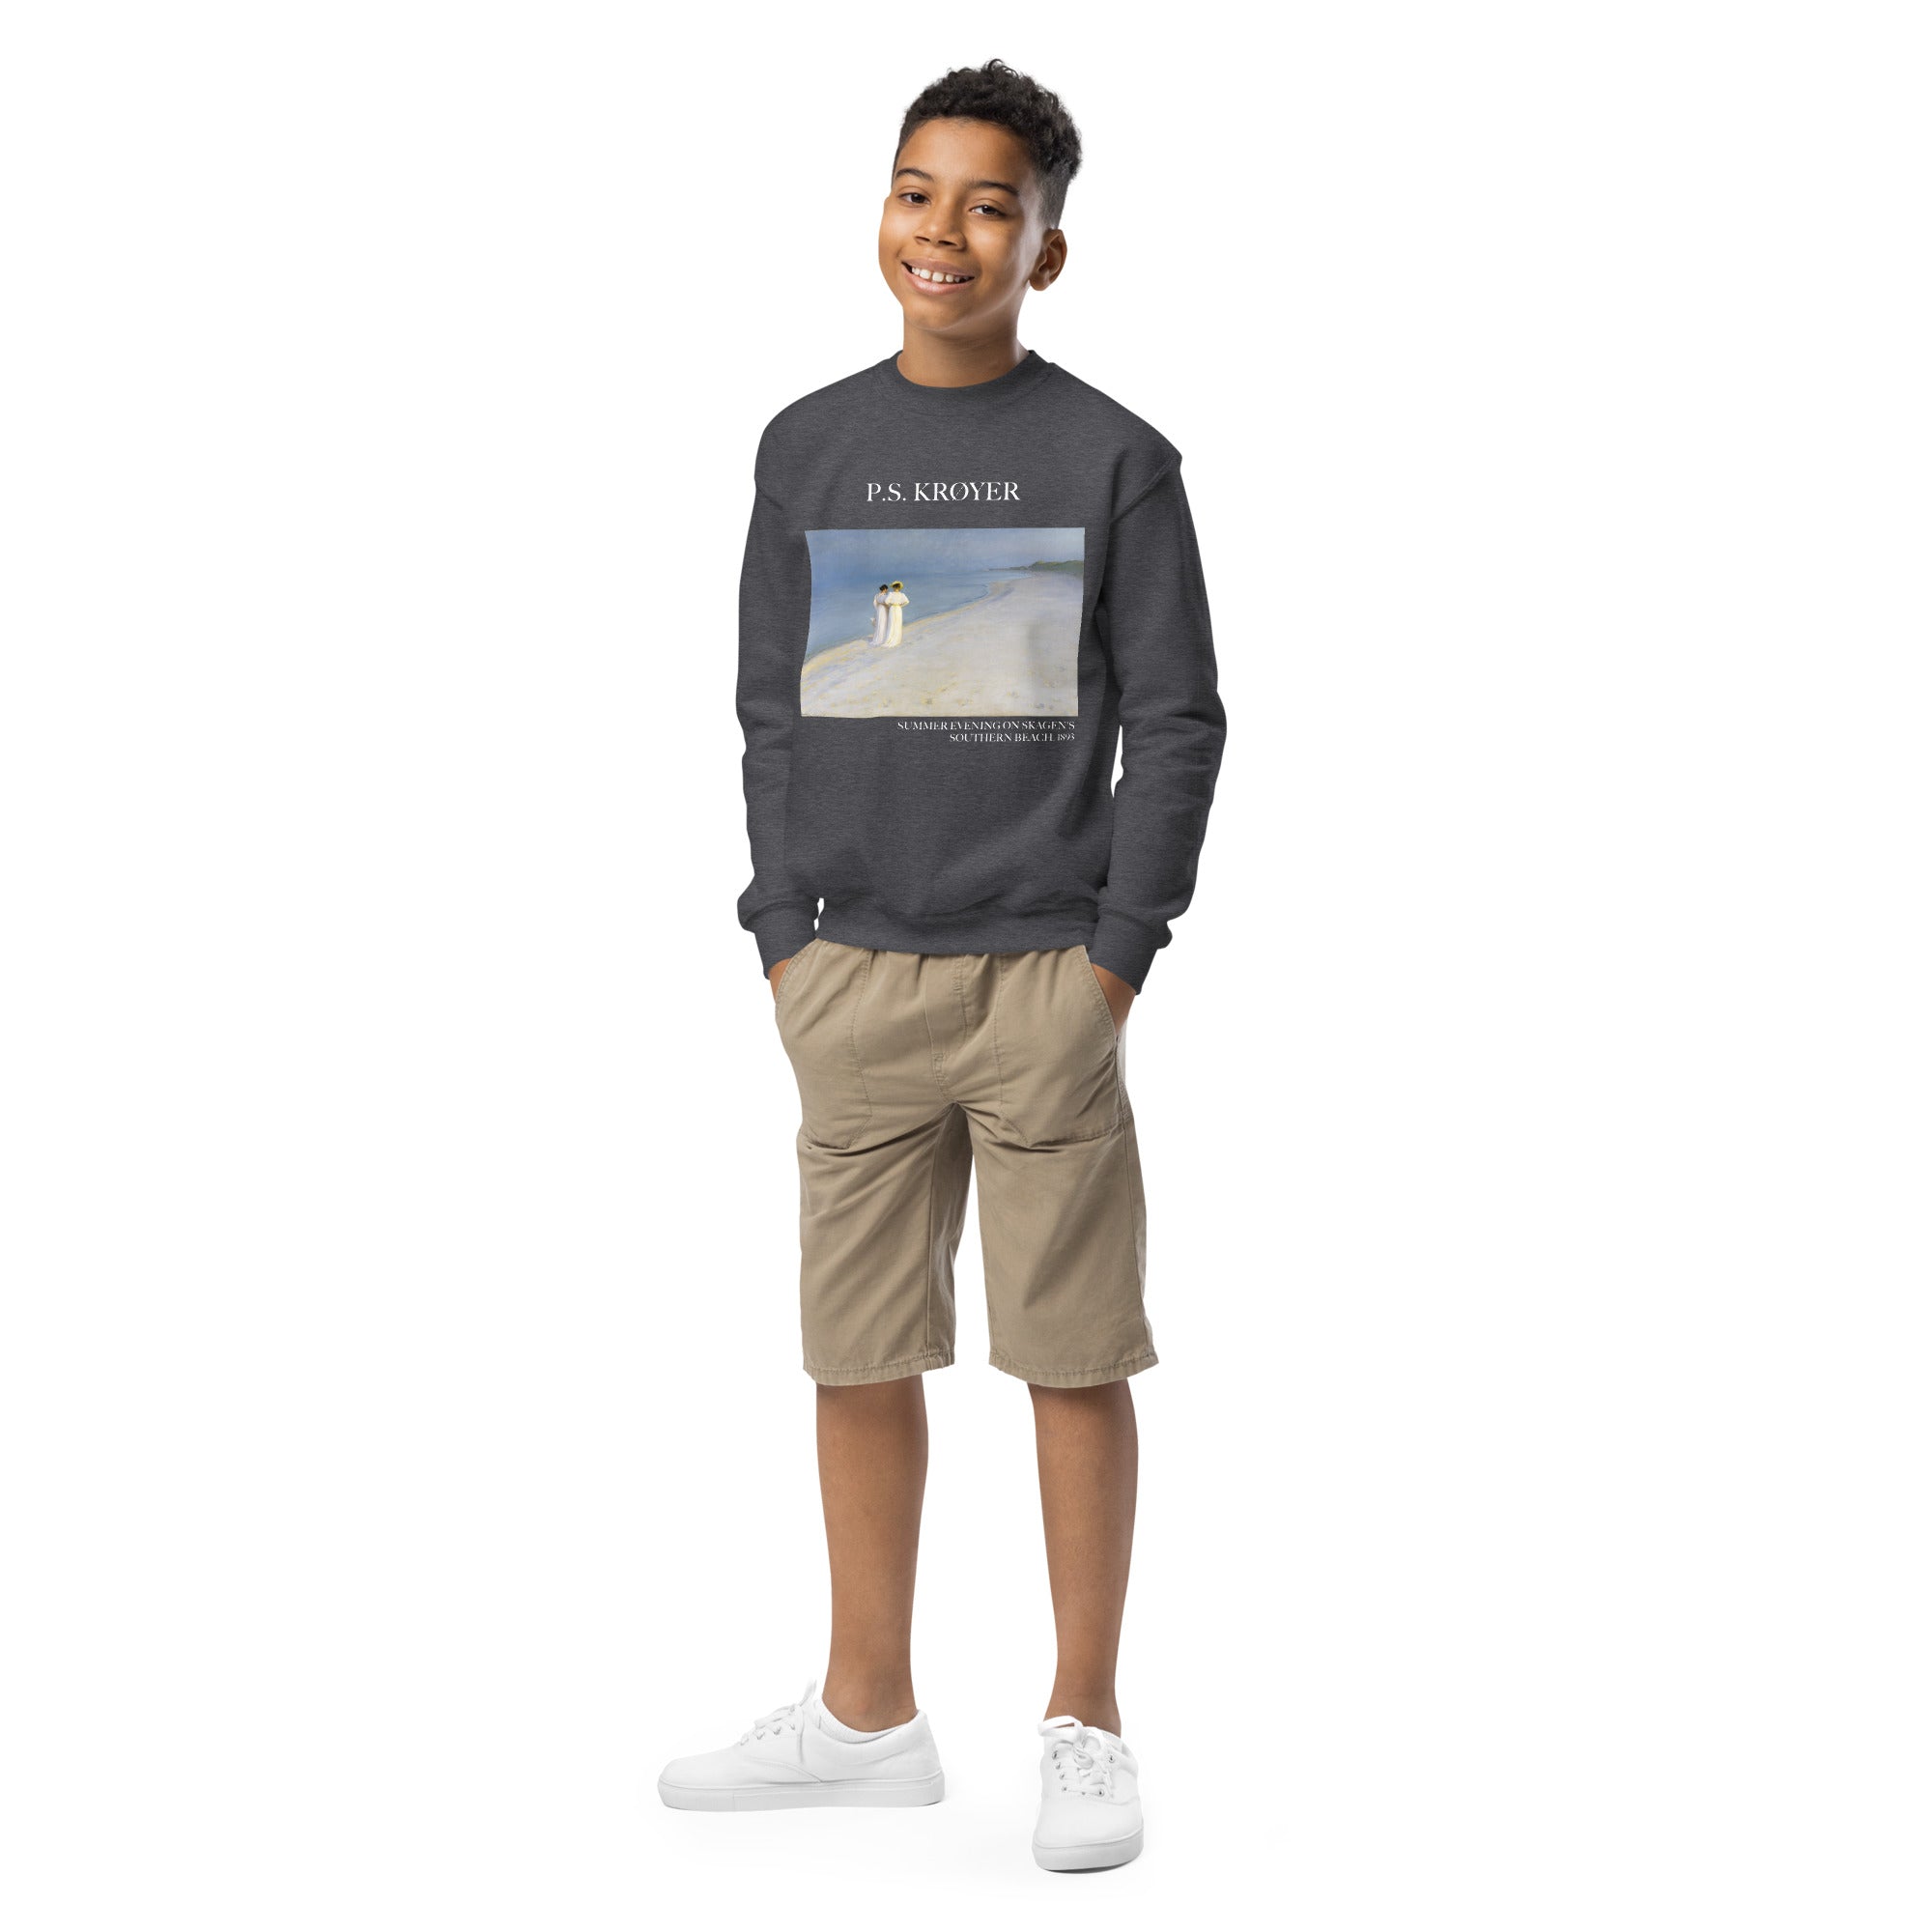 PS Krøyer „Sommerabend am Südstrand von Skagen“ – berühmtes Gemälde – Rundhals-Sweatshirt | Premium-Kunst-Sweatshirt für Jugendliche